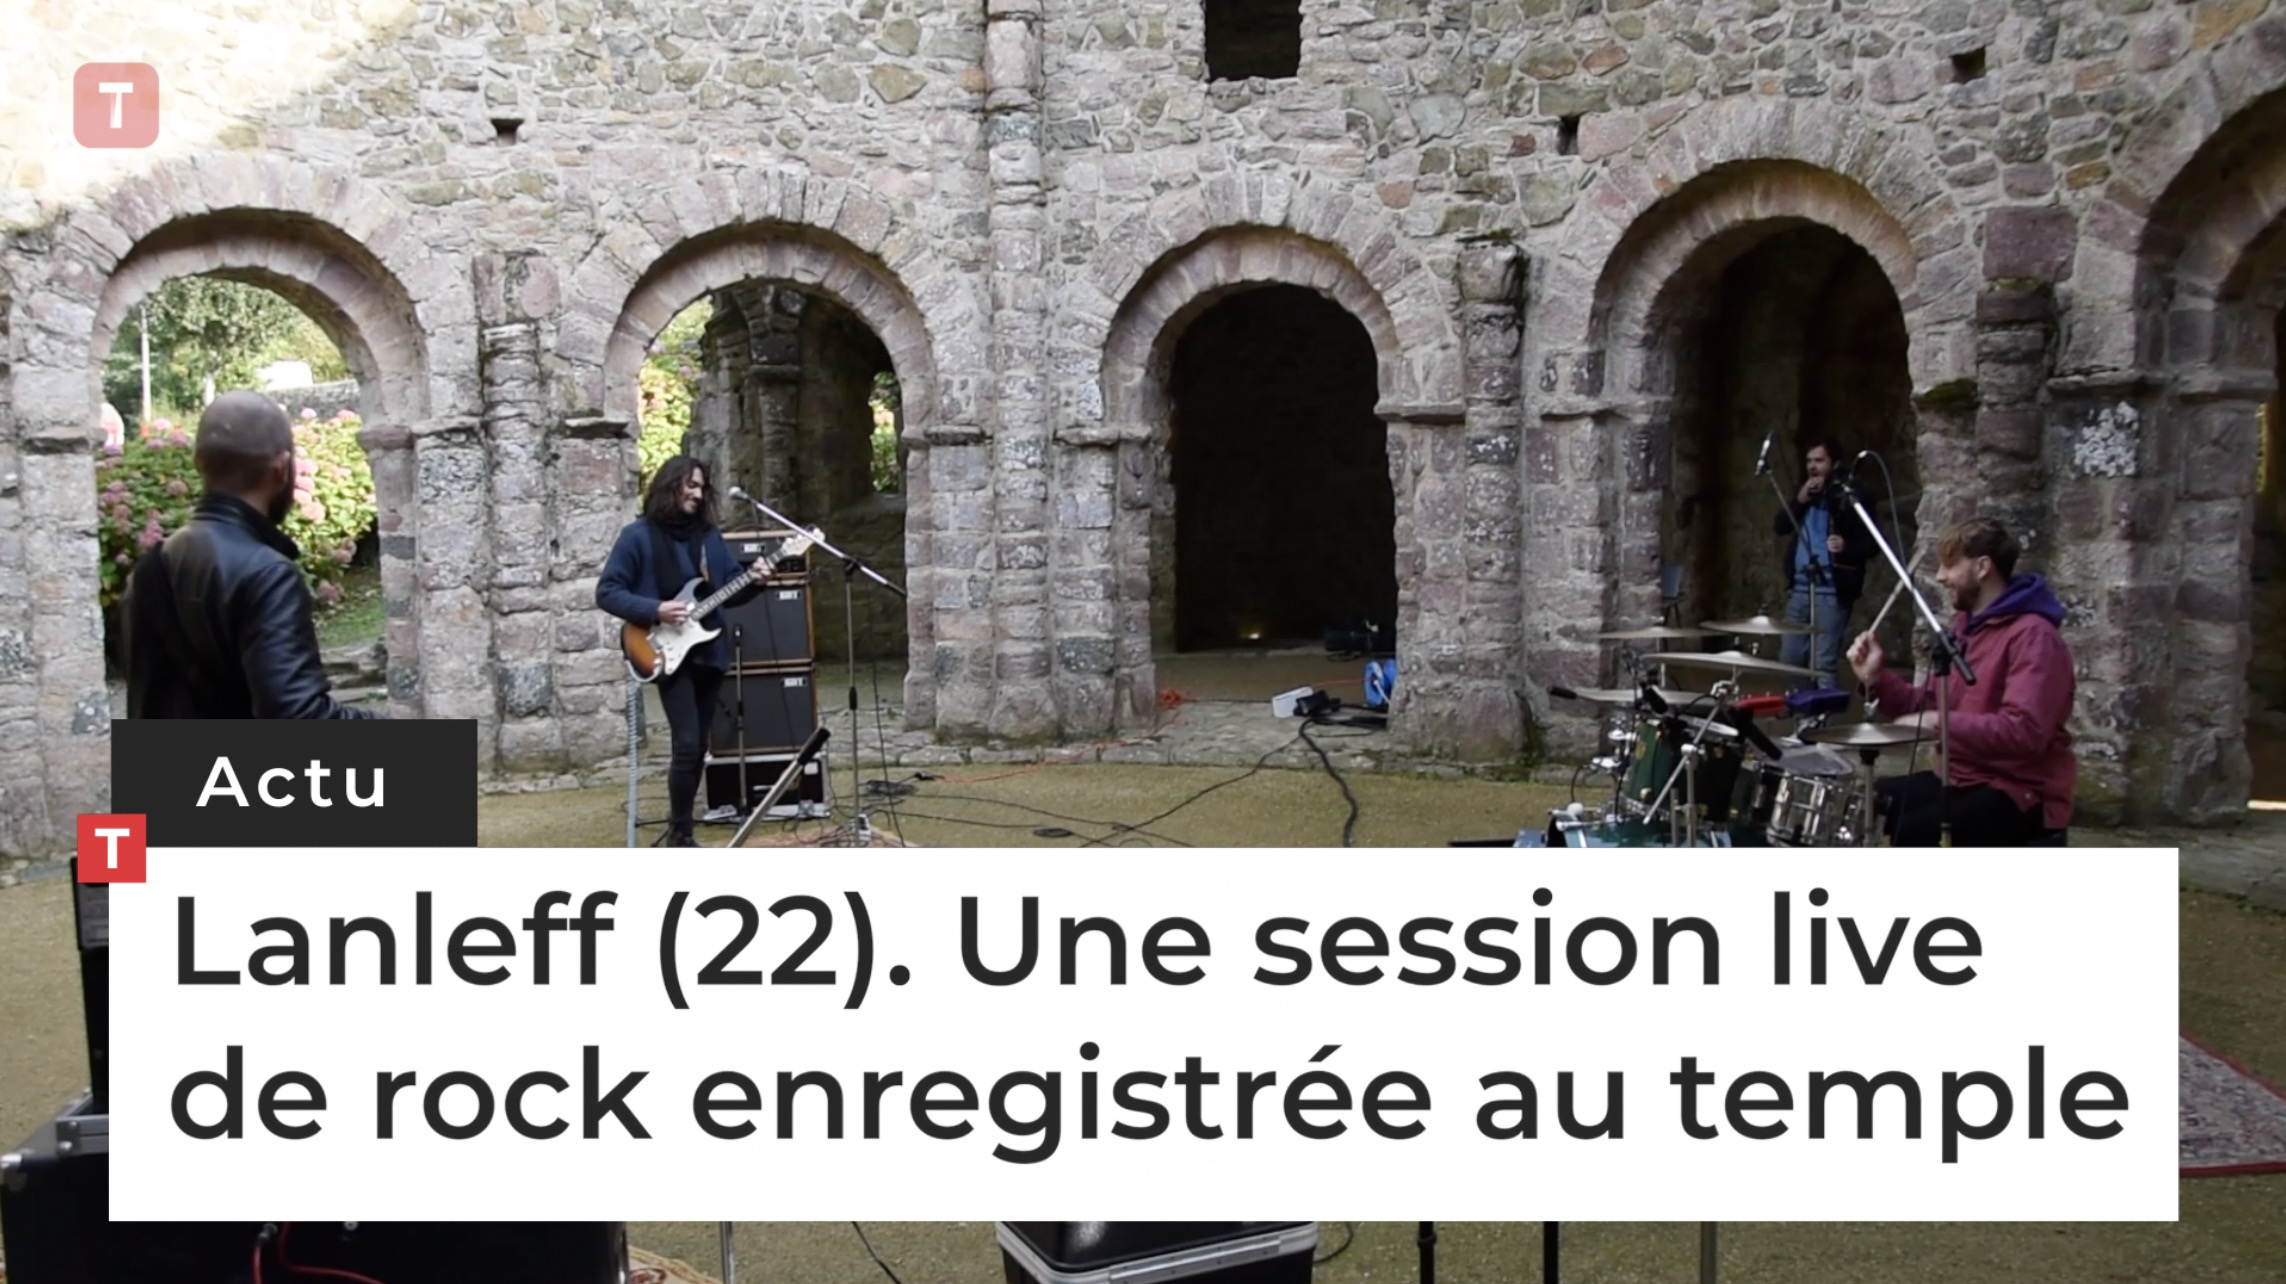 Lanleff (22). Une session live de rock enregistrée au temple (Le Télégramme)